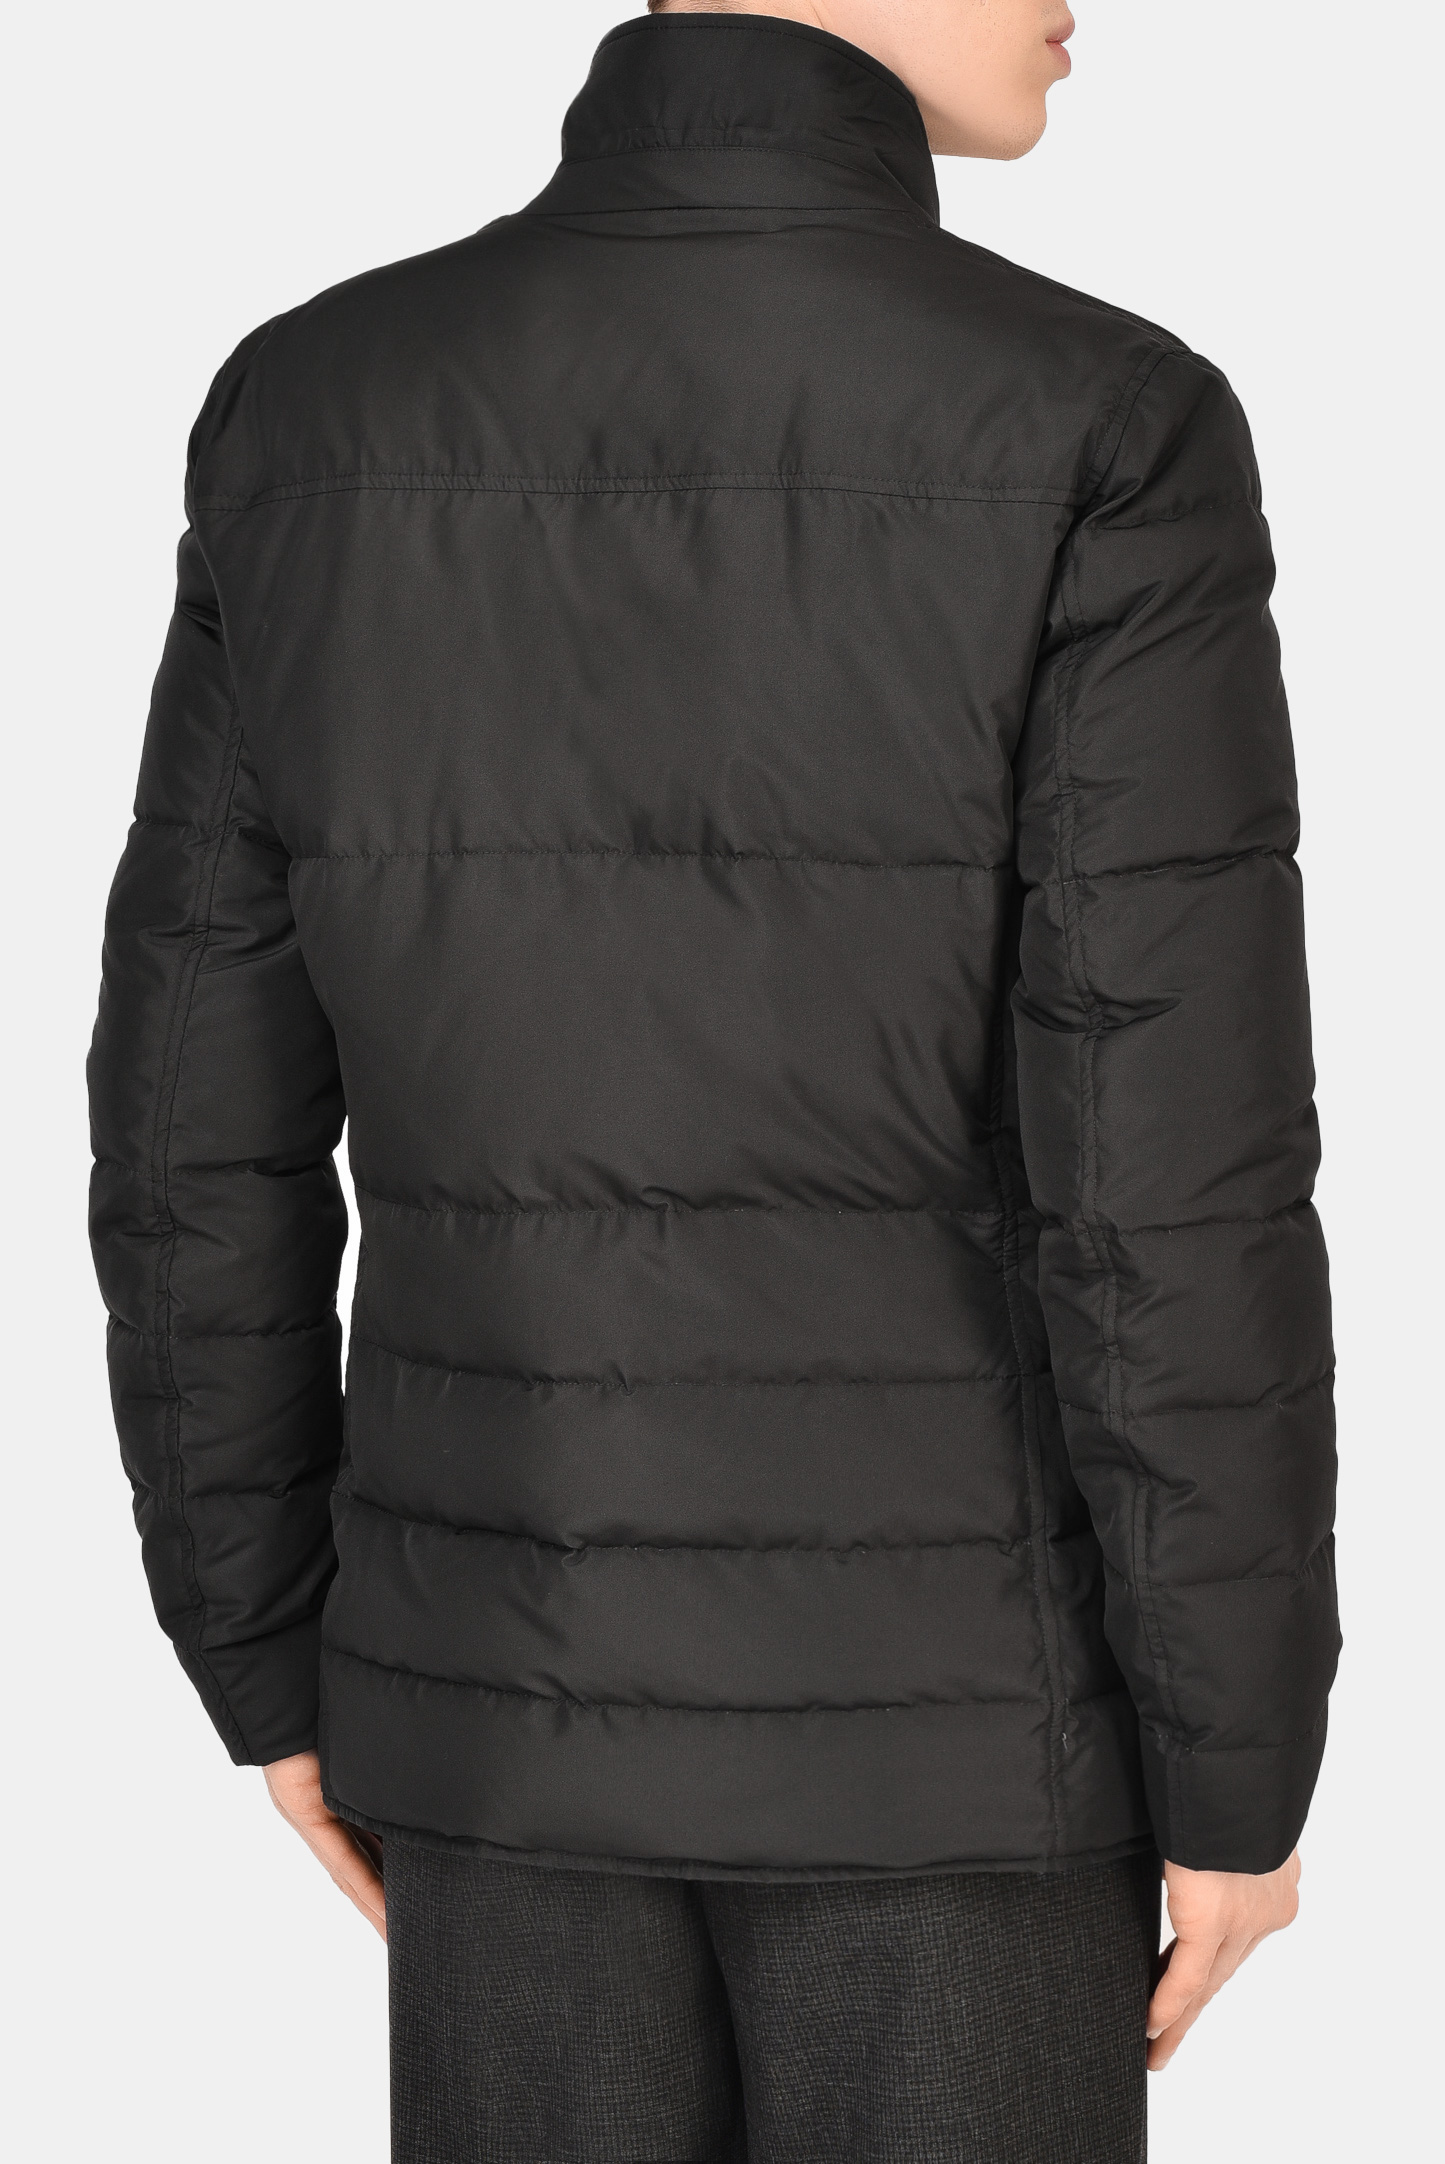 Куртка CANALI SG01718 O30340, цвет: Черный, Мужской